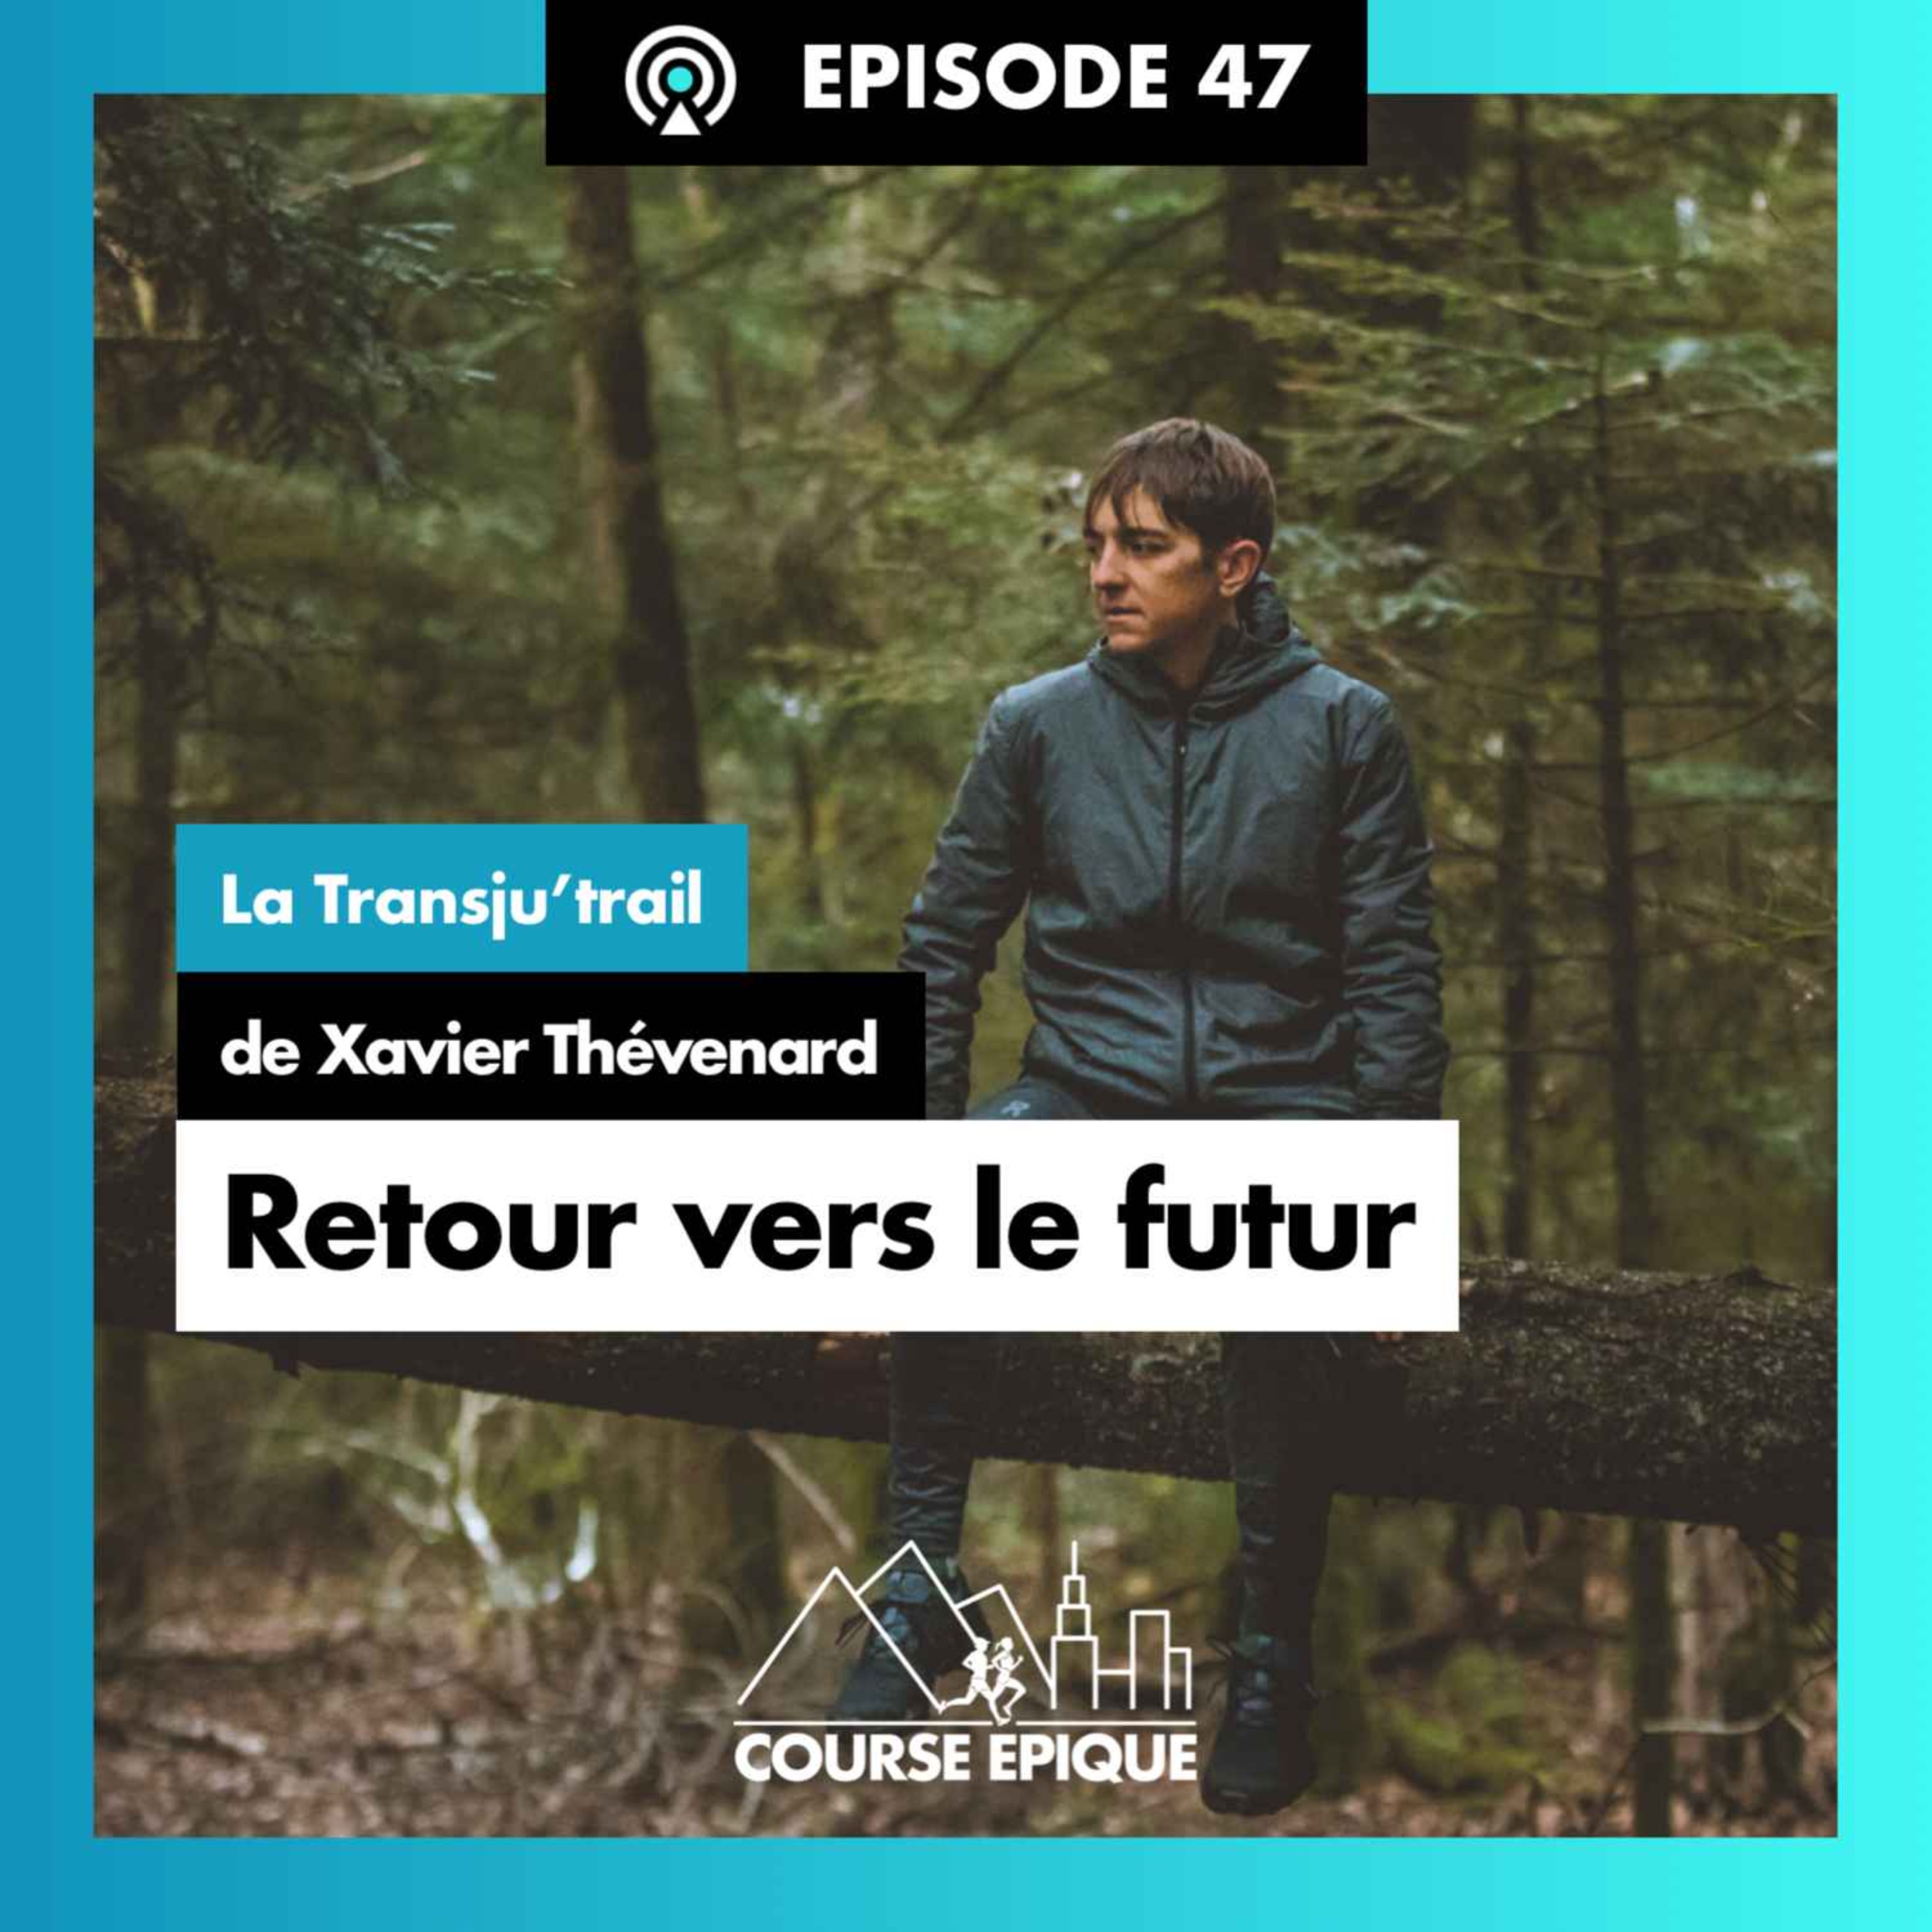 #47 "Retour vers le futur", la Transju'trail de Xavier Thévenard